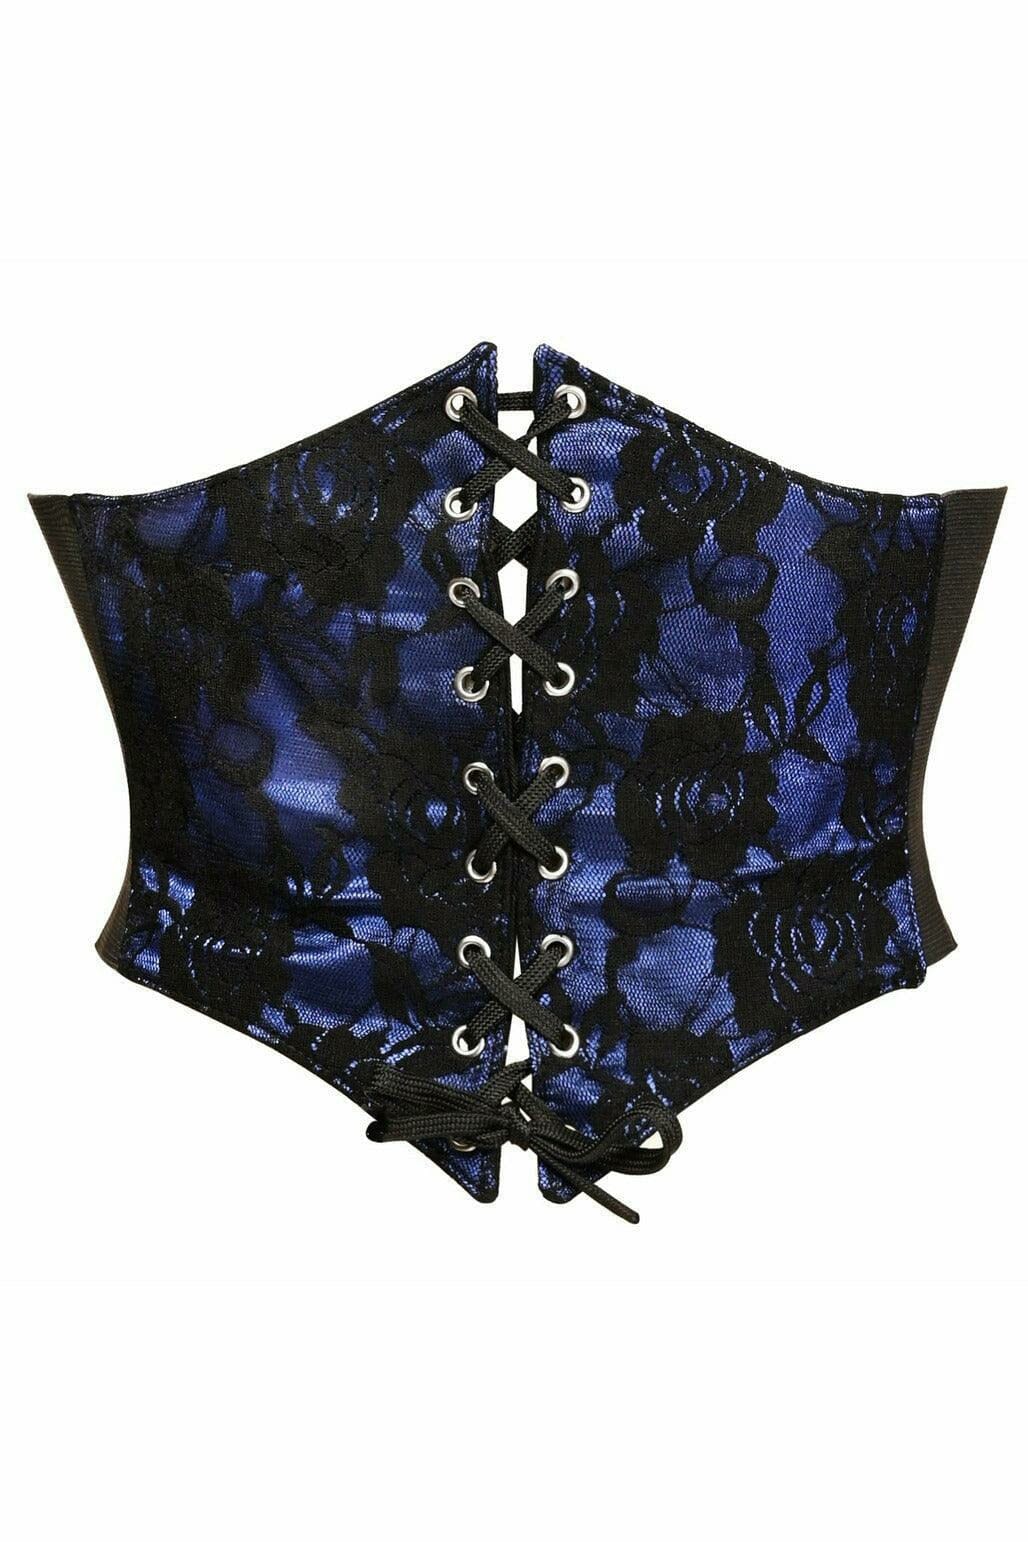 Lavish Blue w/Black Lace Overlay Corset Belt Cincher-Corset Belts-Daisy Corsets-Black-S-SEXYSHOES.COM